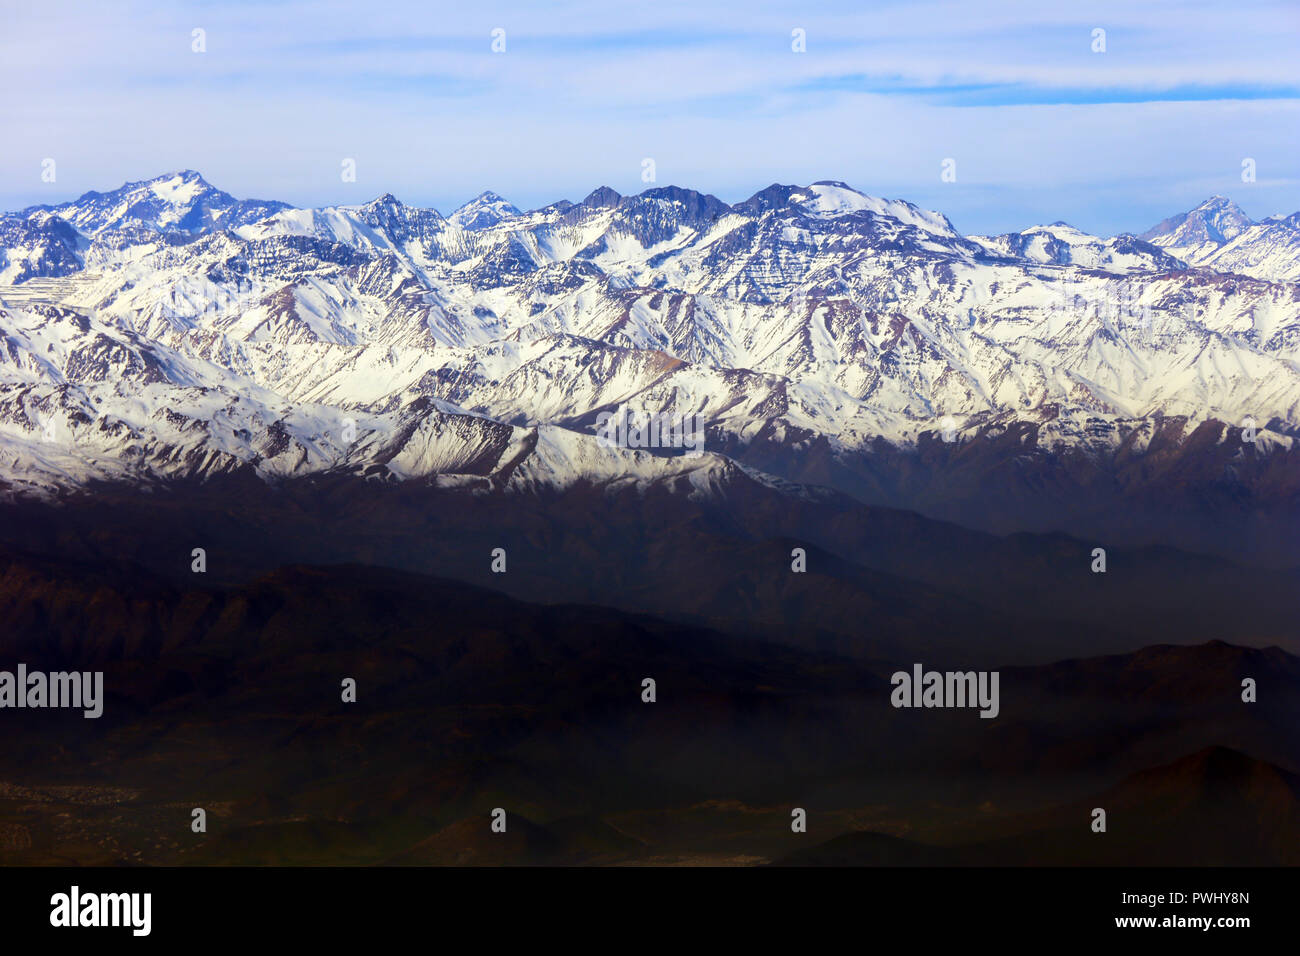 Montagnes enneigées, pris près de Santiago (Chili). Banque D'Images